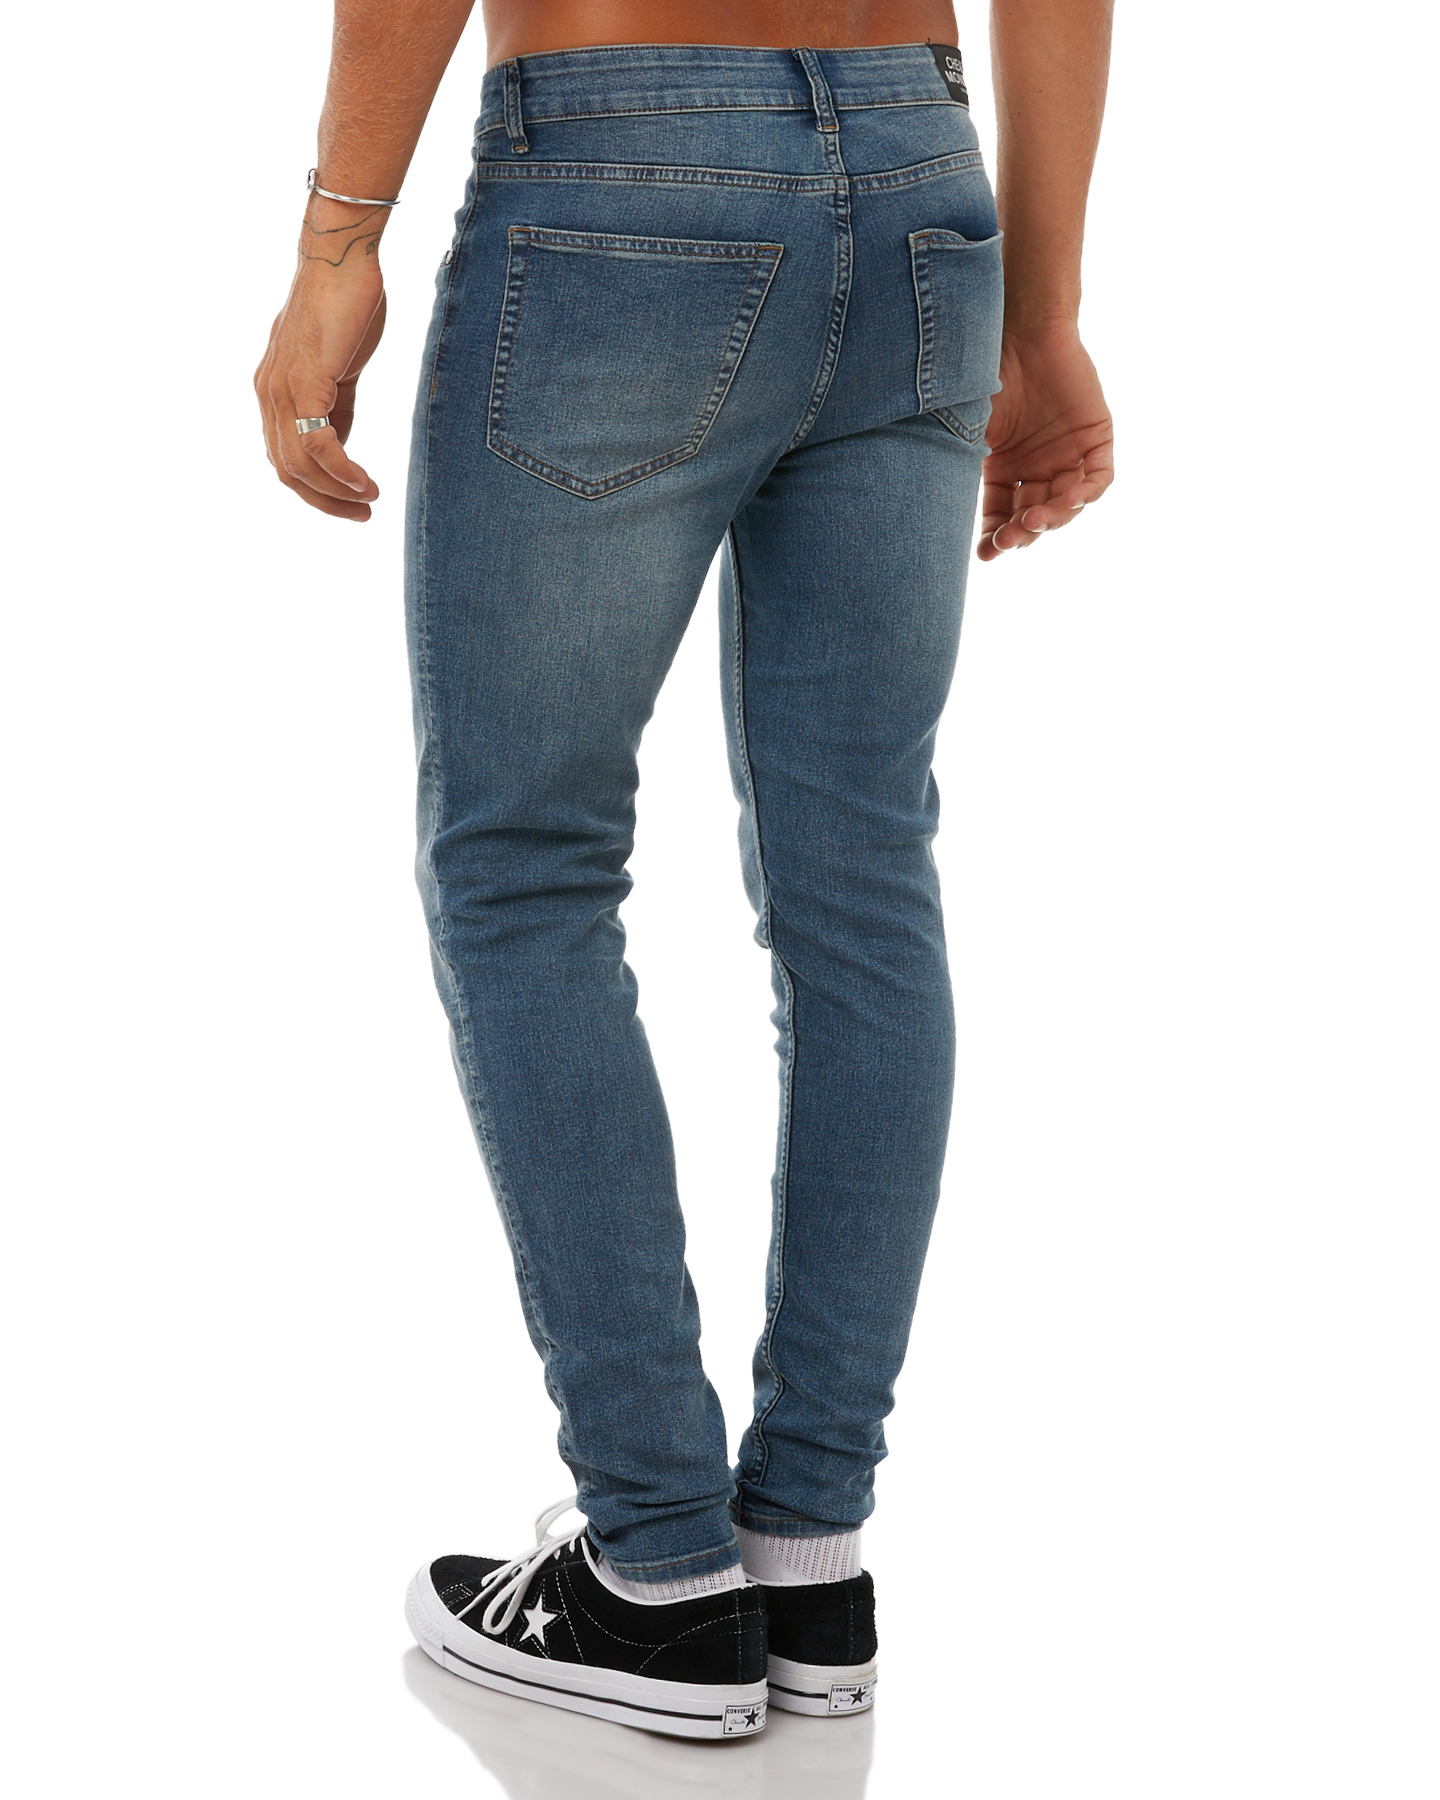 Grosir Distributor Celana Jeans Oxybro 04 Harga Murah Bagus Berkualitas